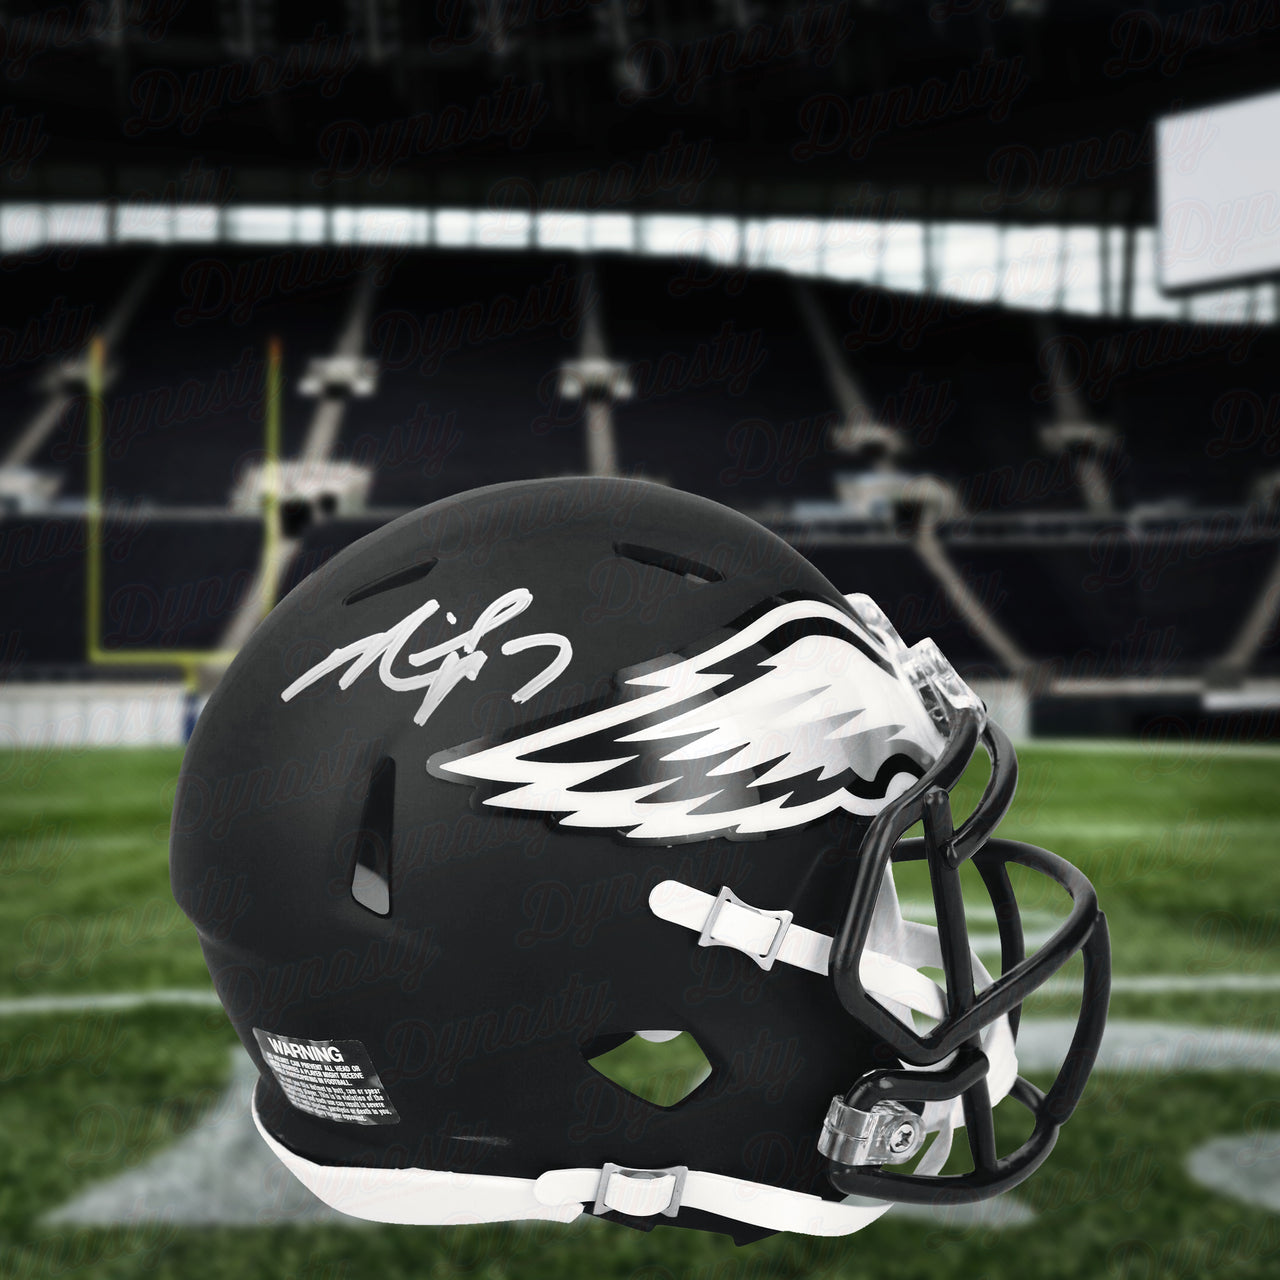 Michael Vick Philadelphia Eagles Autographed Alternate Black Speed Mini-Helmet - Dynasty Sports & Framing 